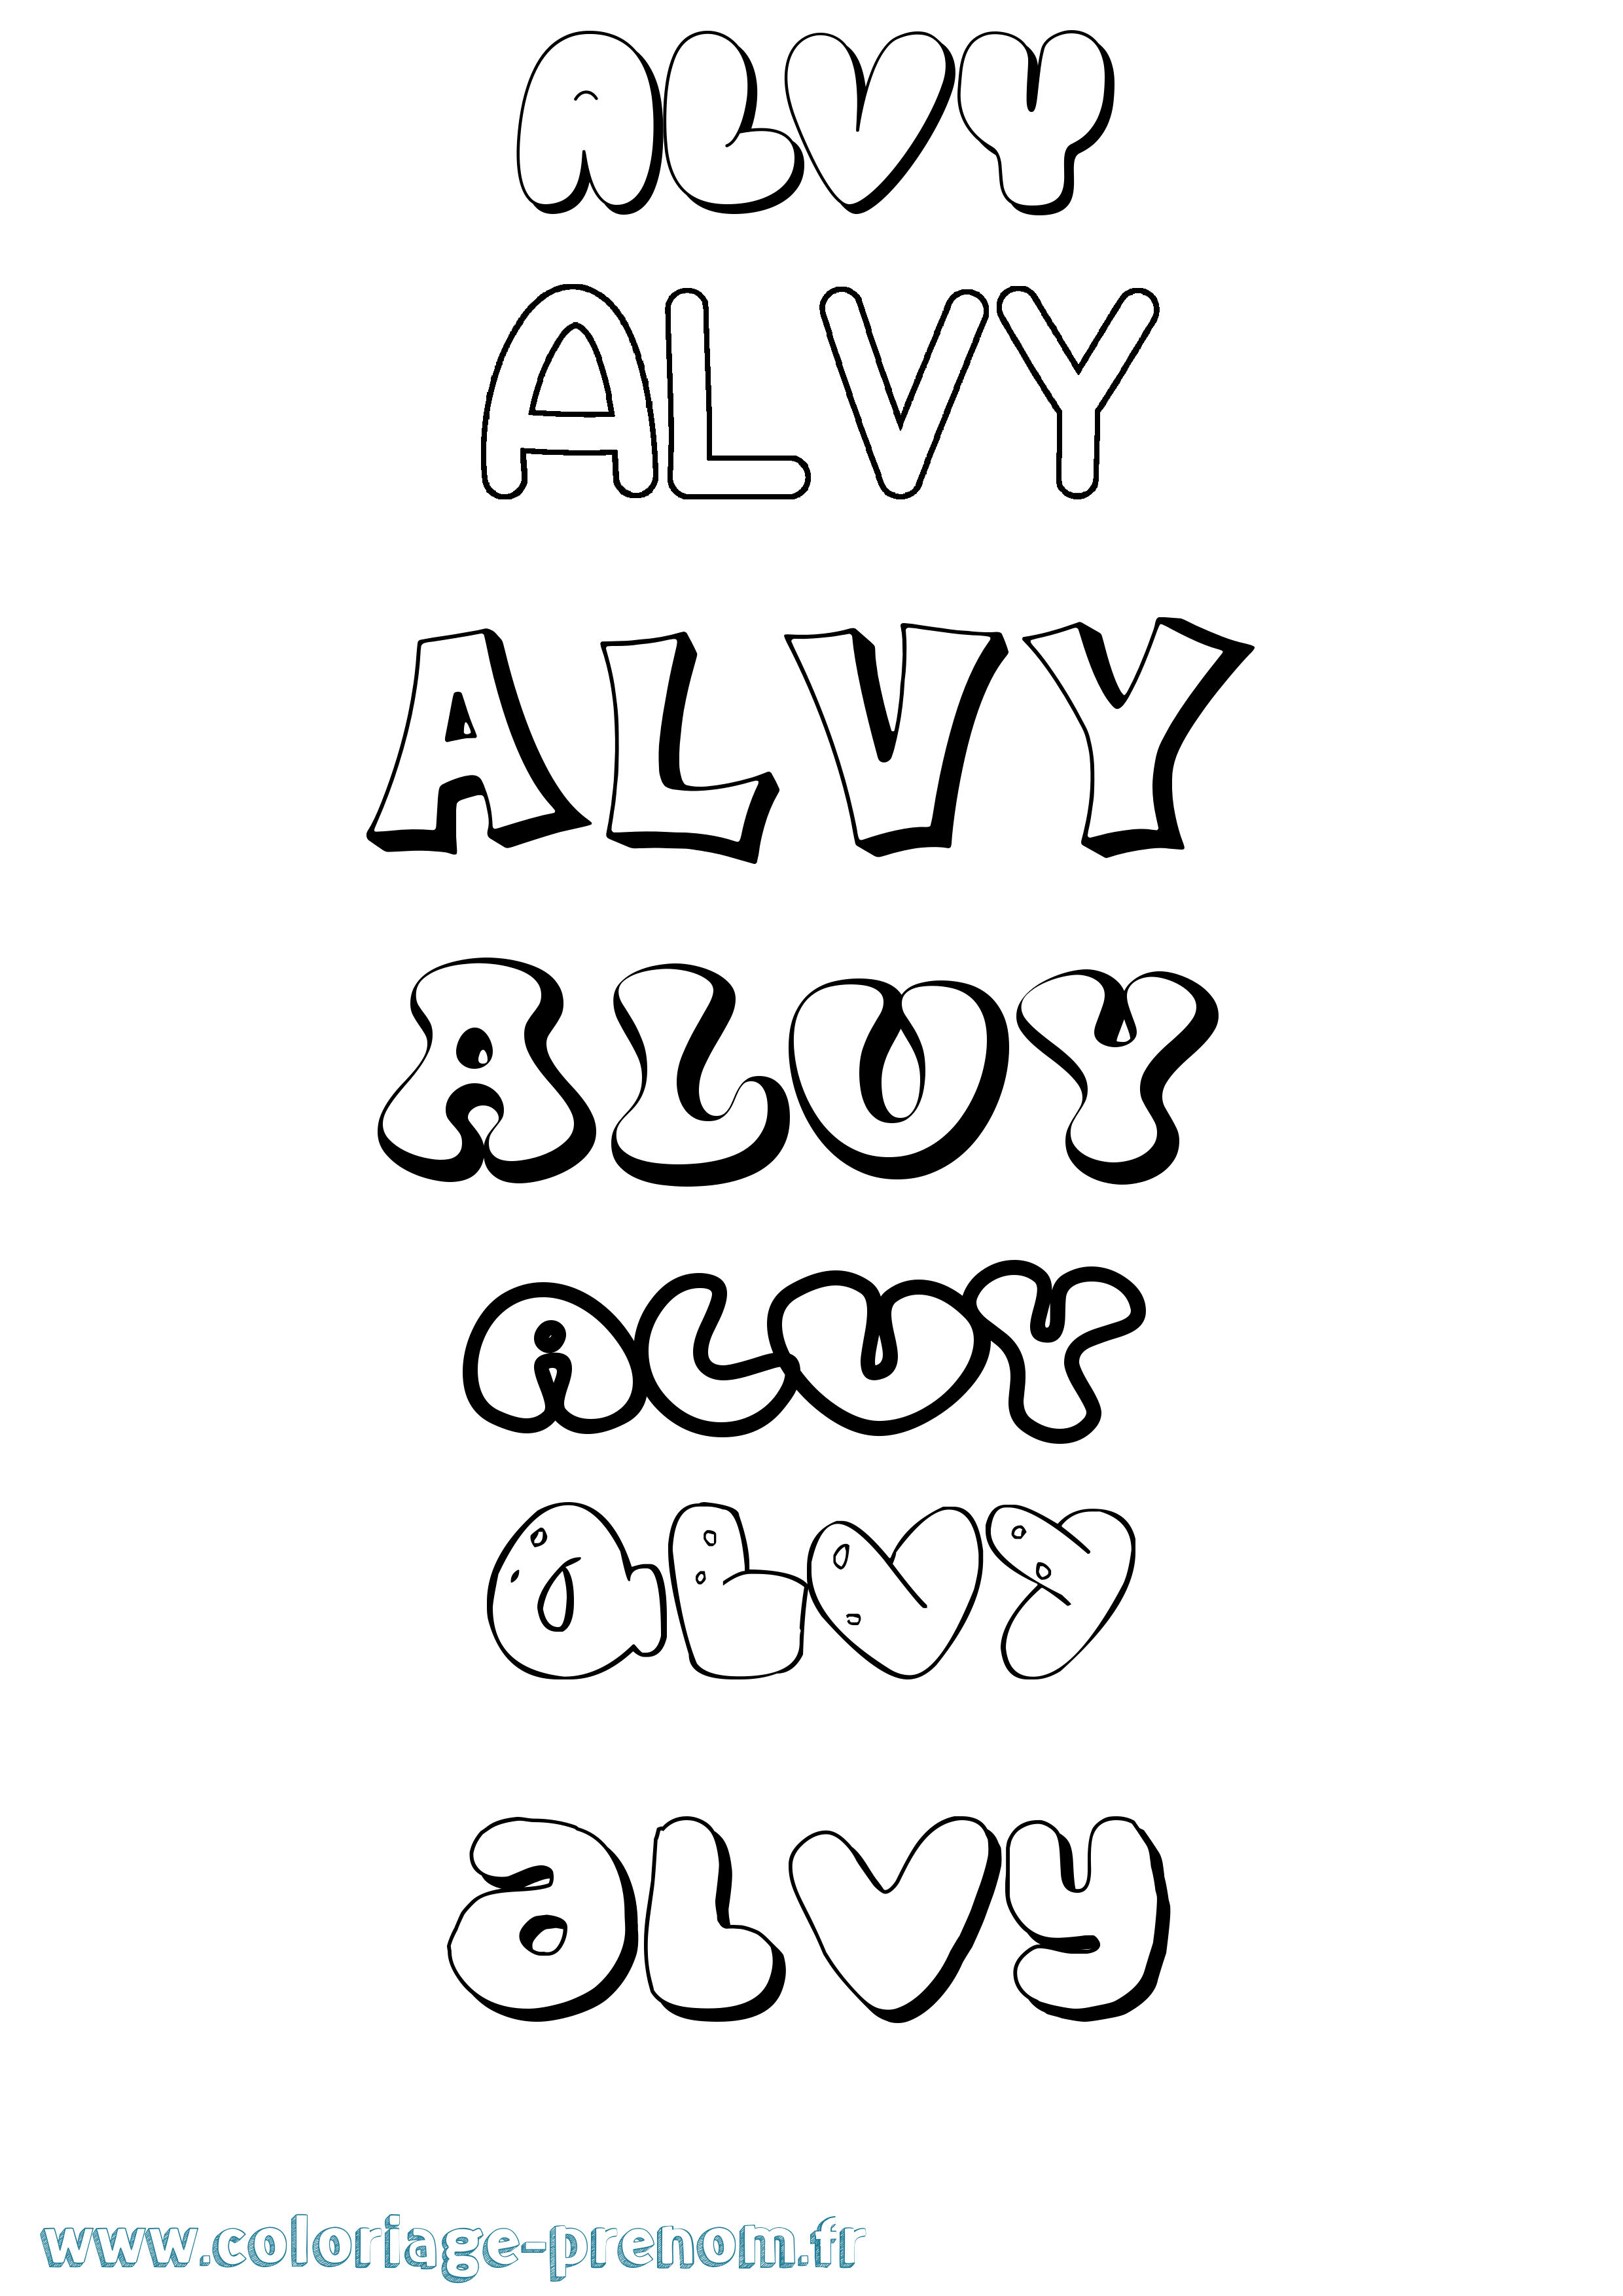 Coloriage prénom Alvy Bubble